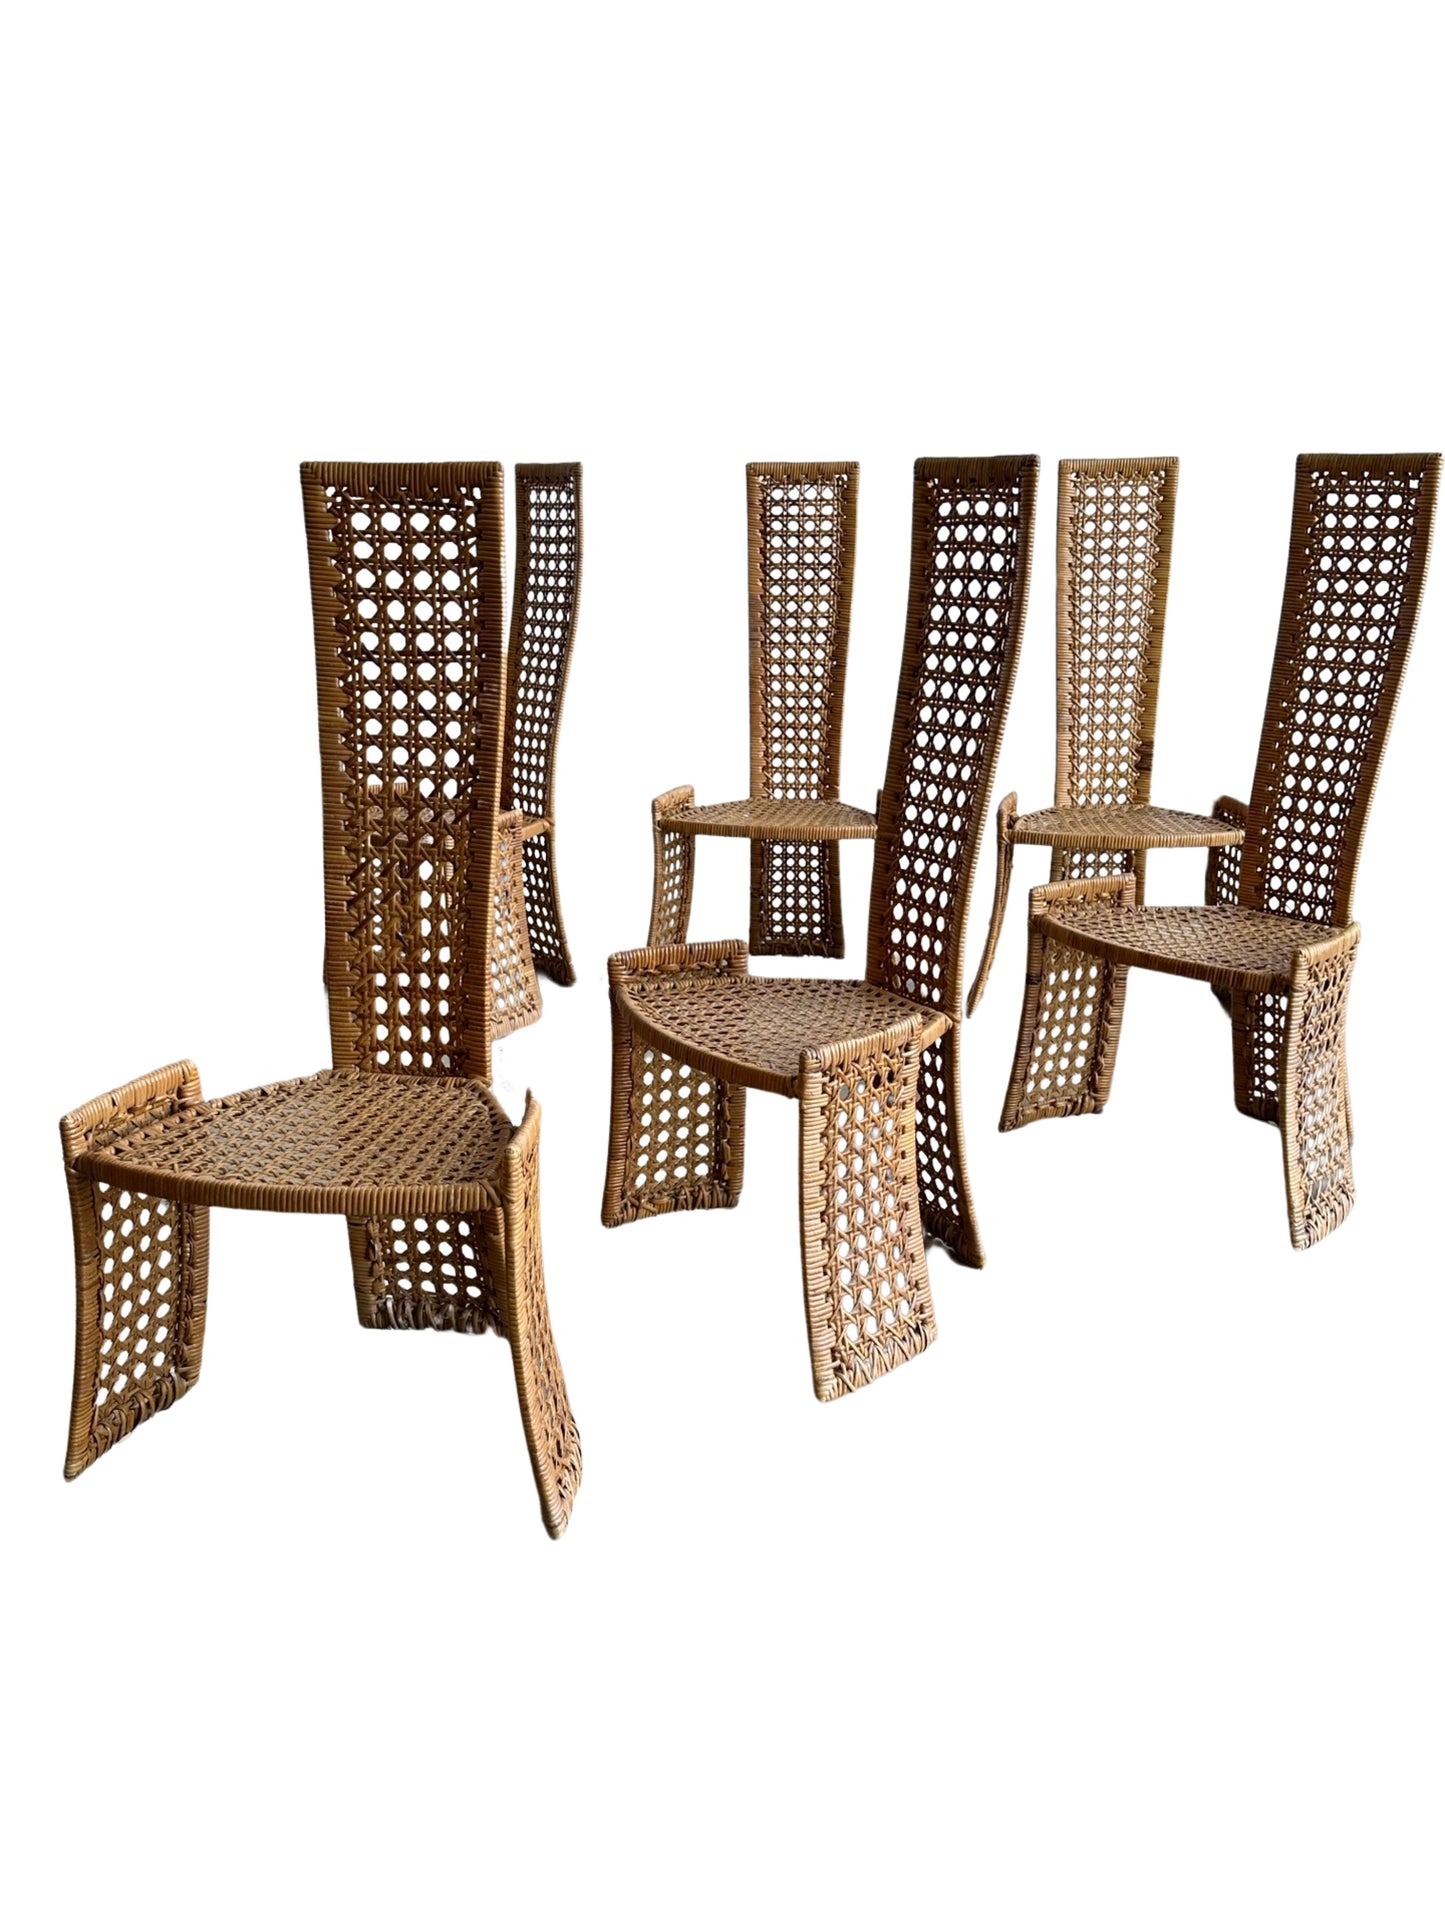 Danny Ho Fong for Tropi-cal Set of Six Rattan Chairs 1975